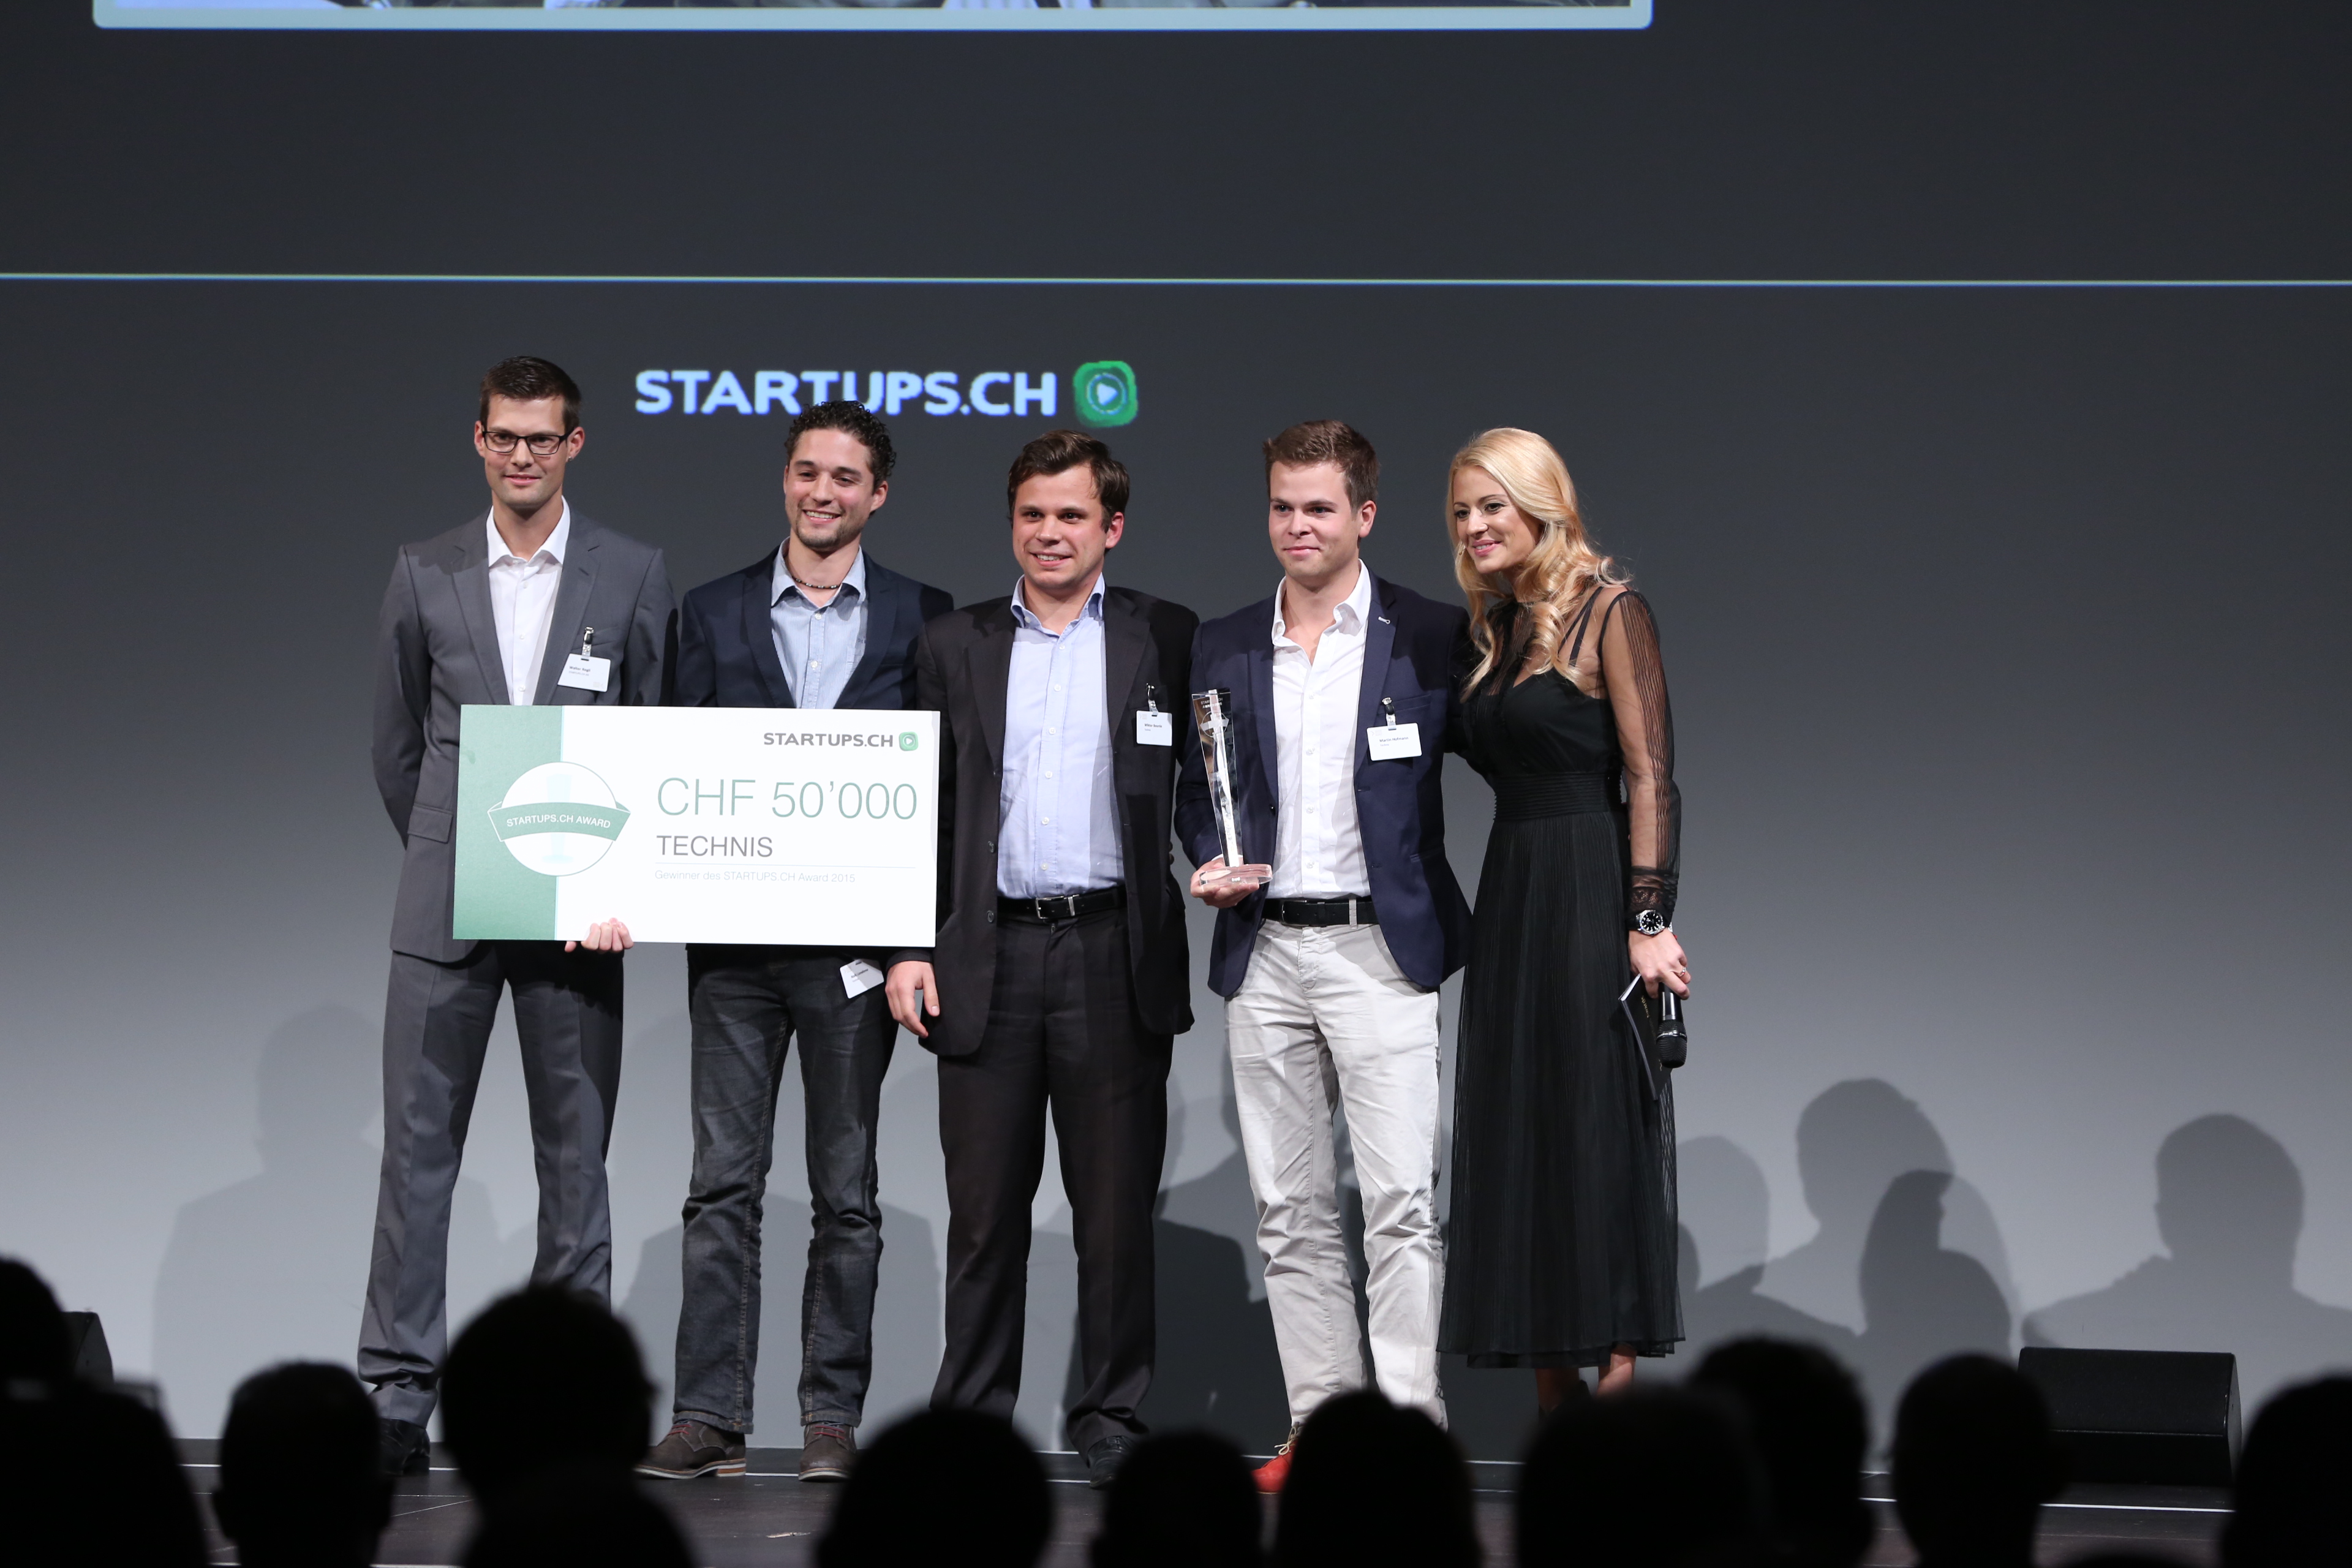 Naïk, Wiktor et Martin remportent le premier prix du concours startup.ch